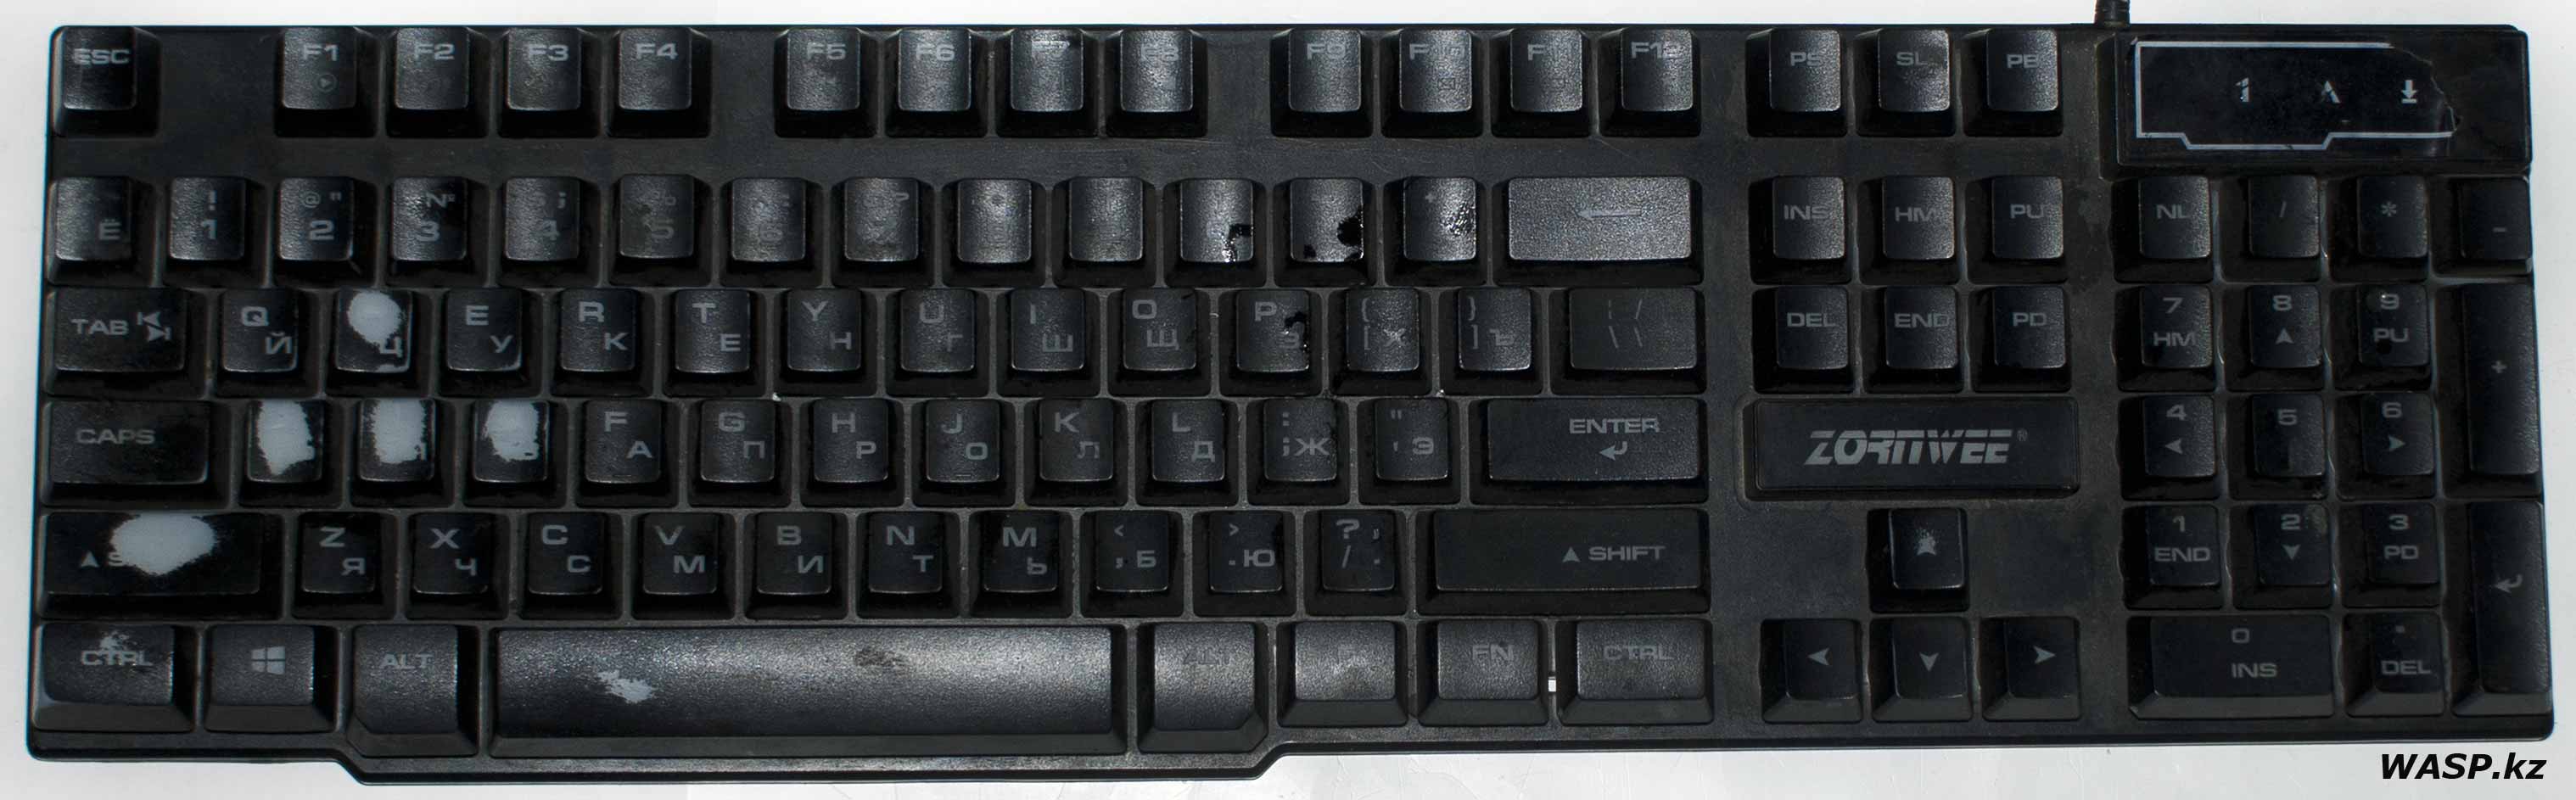 ZORNWEE K888 обзор дешевой игровой клавиатуры